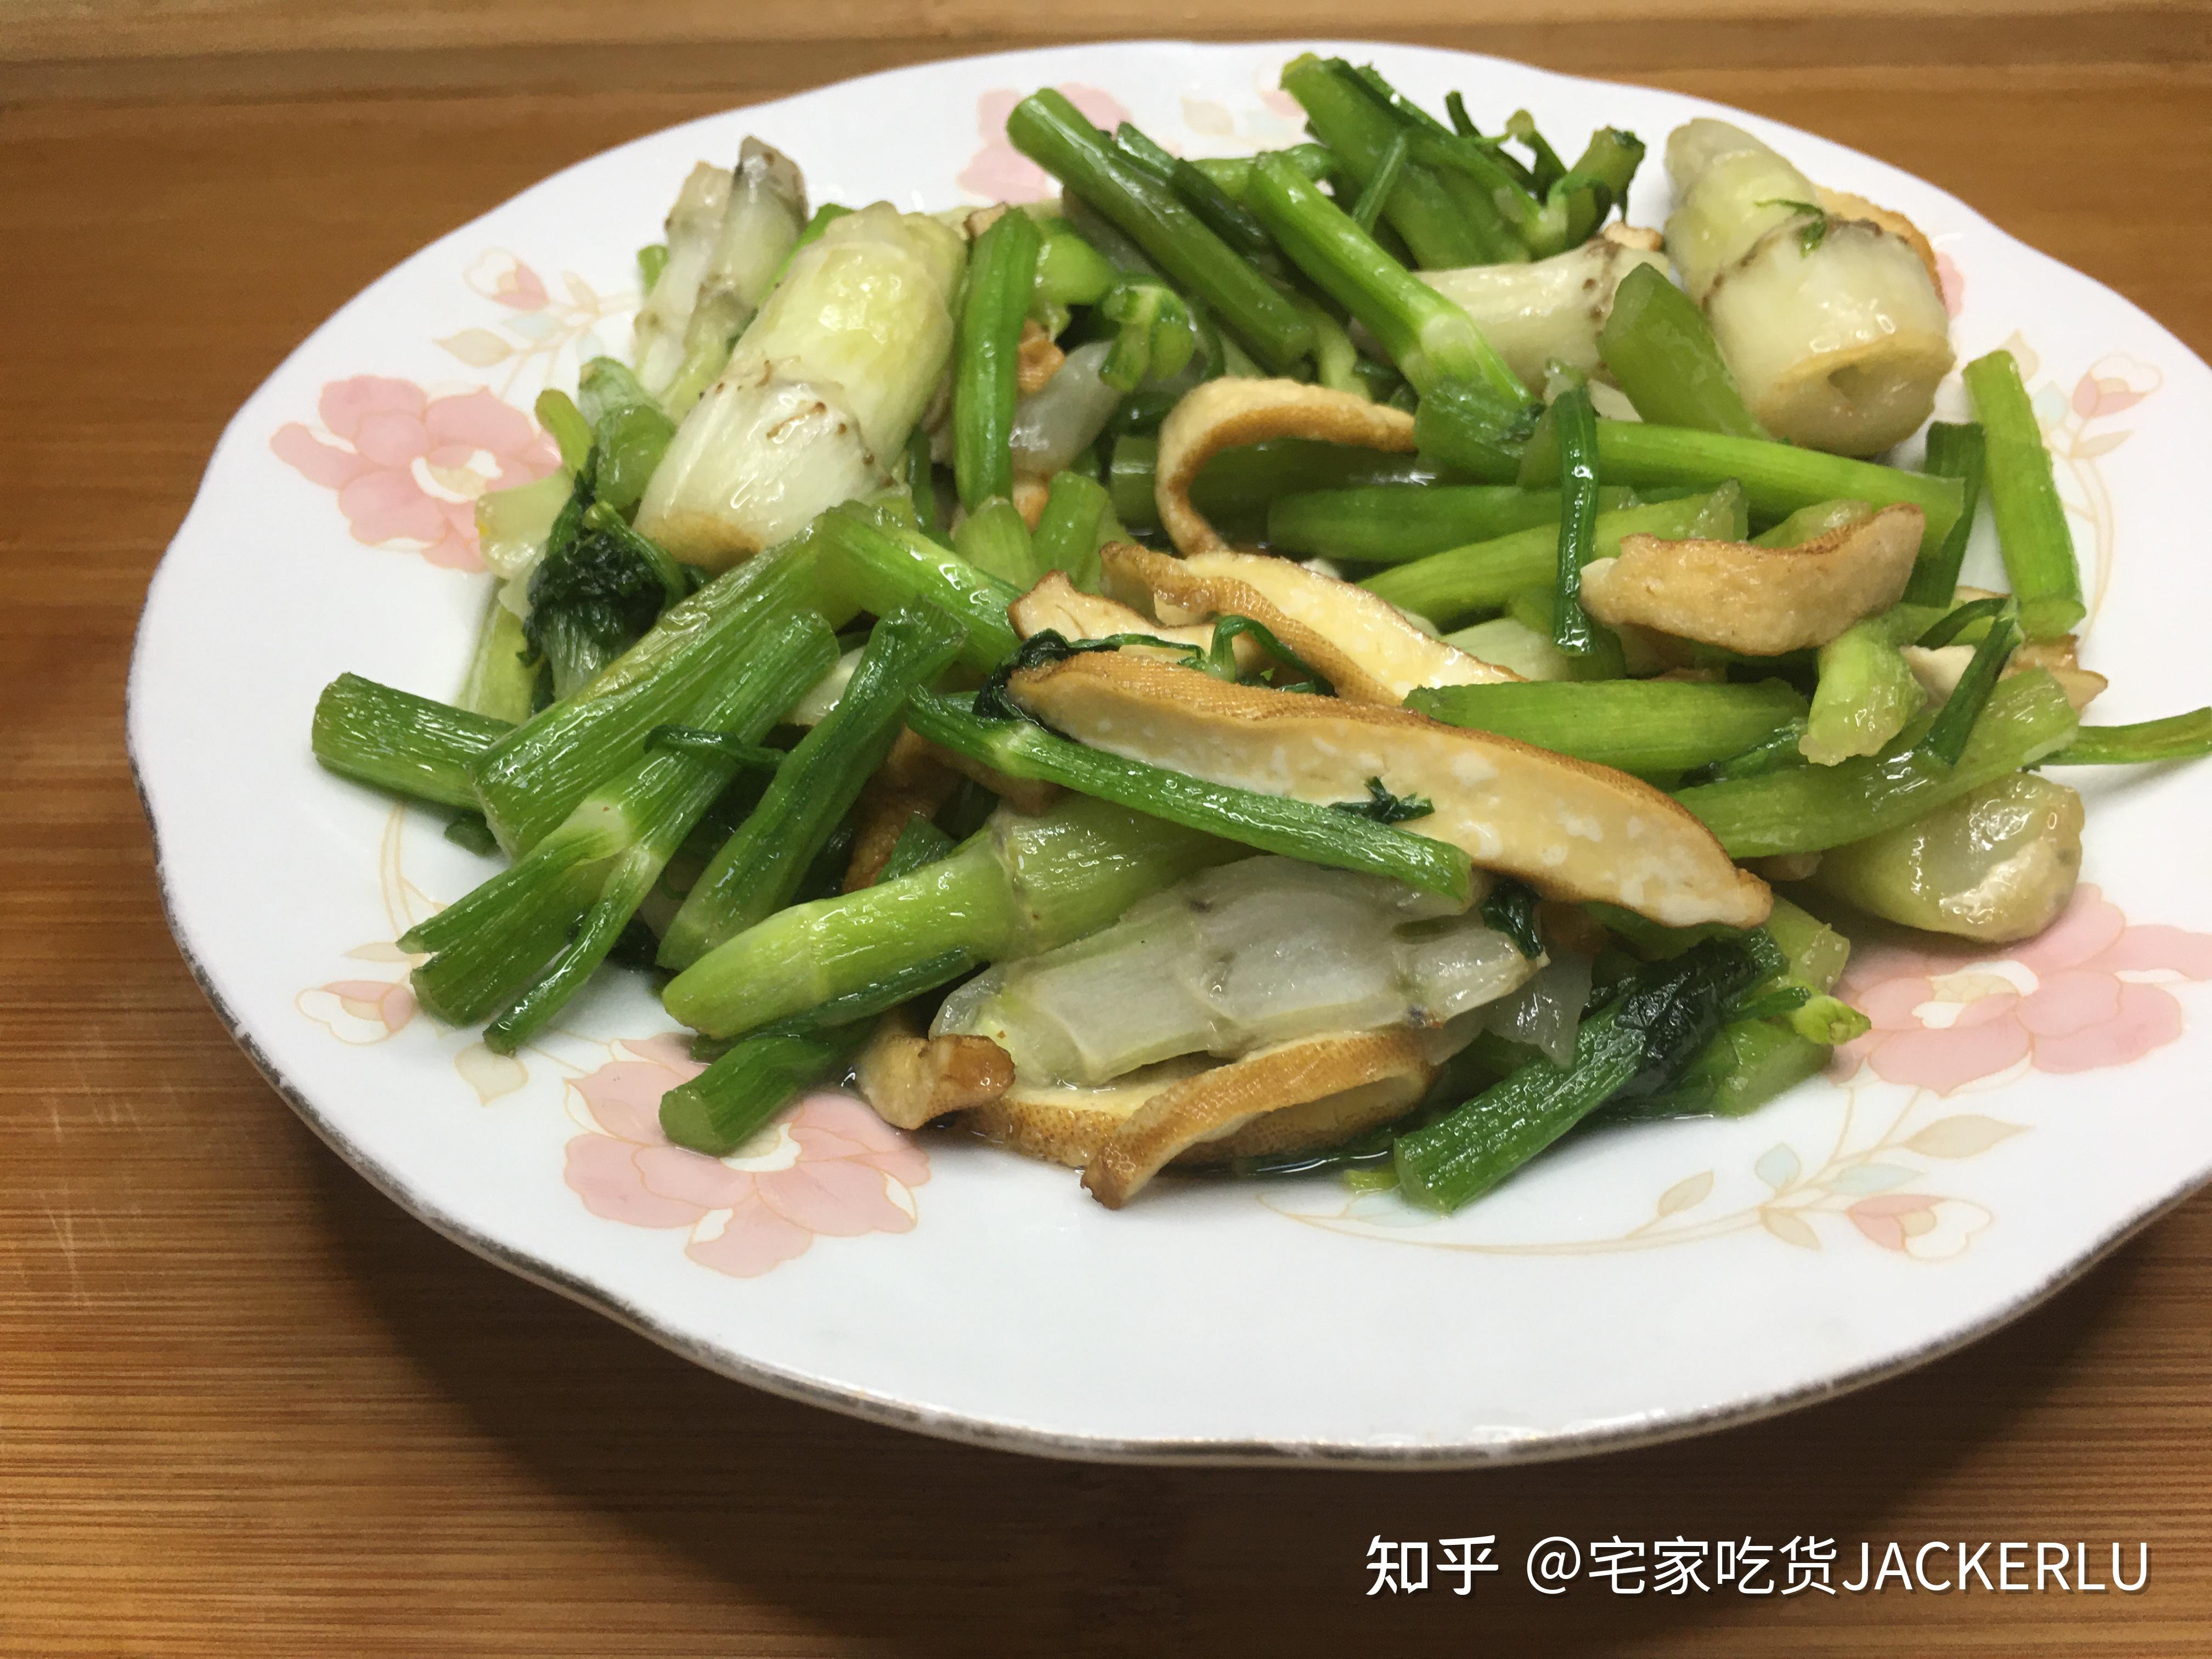 芹菜炒圆白菜,芹菜炒圆白菜的家常做法 - 美食杰芹菜炒圆白菜做法大全